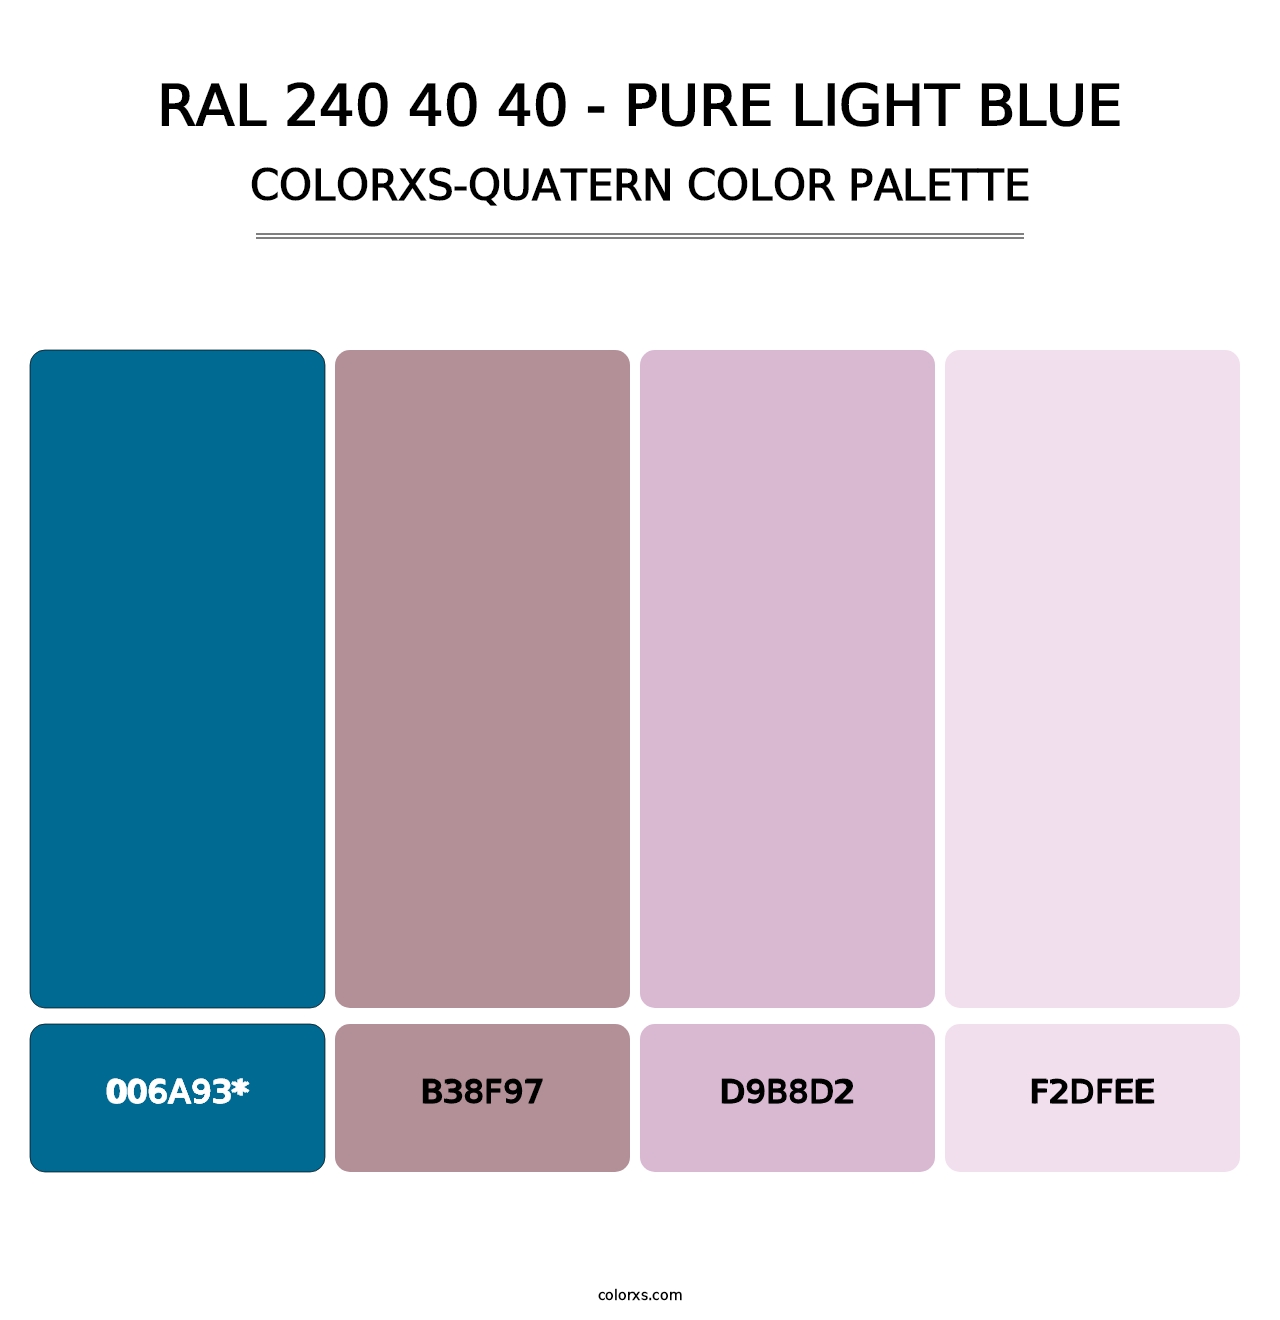 RAL 240 40 40 - Pure Light Blue - Colorxs Quatern Palette